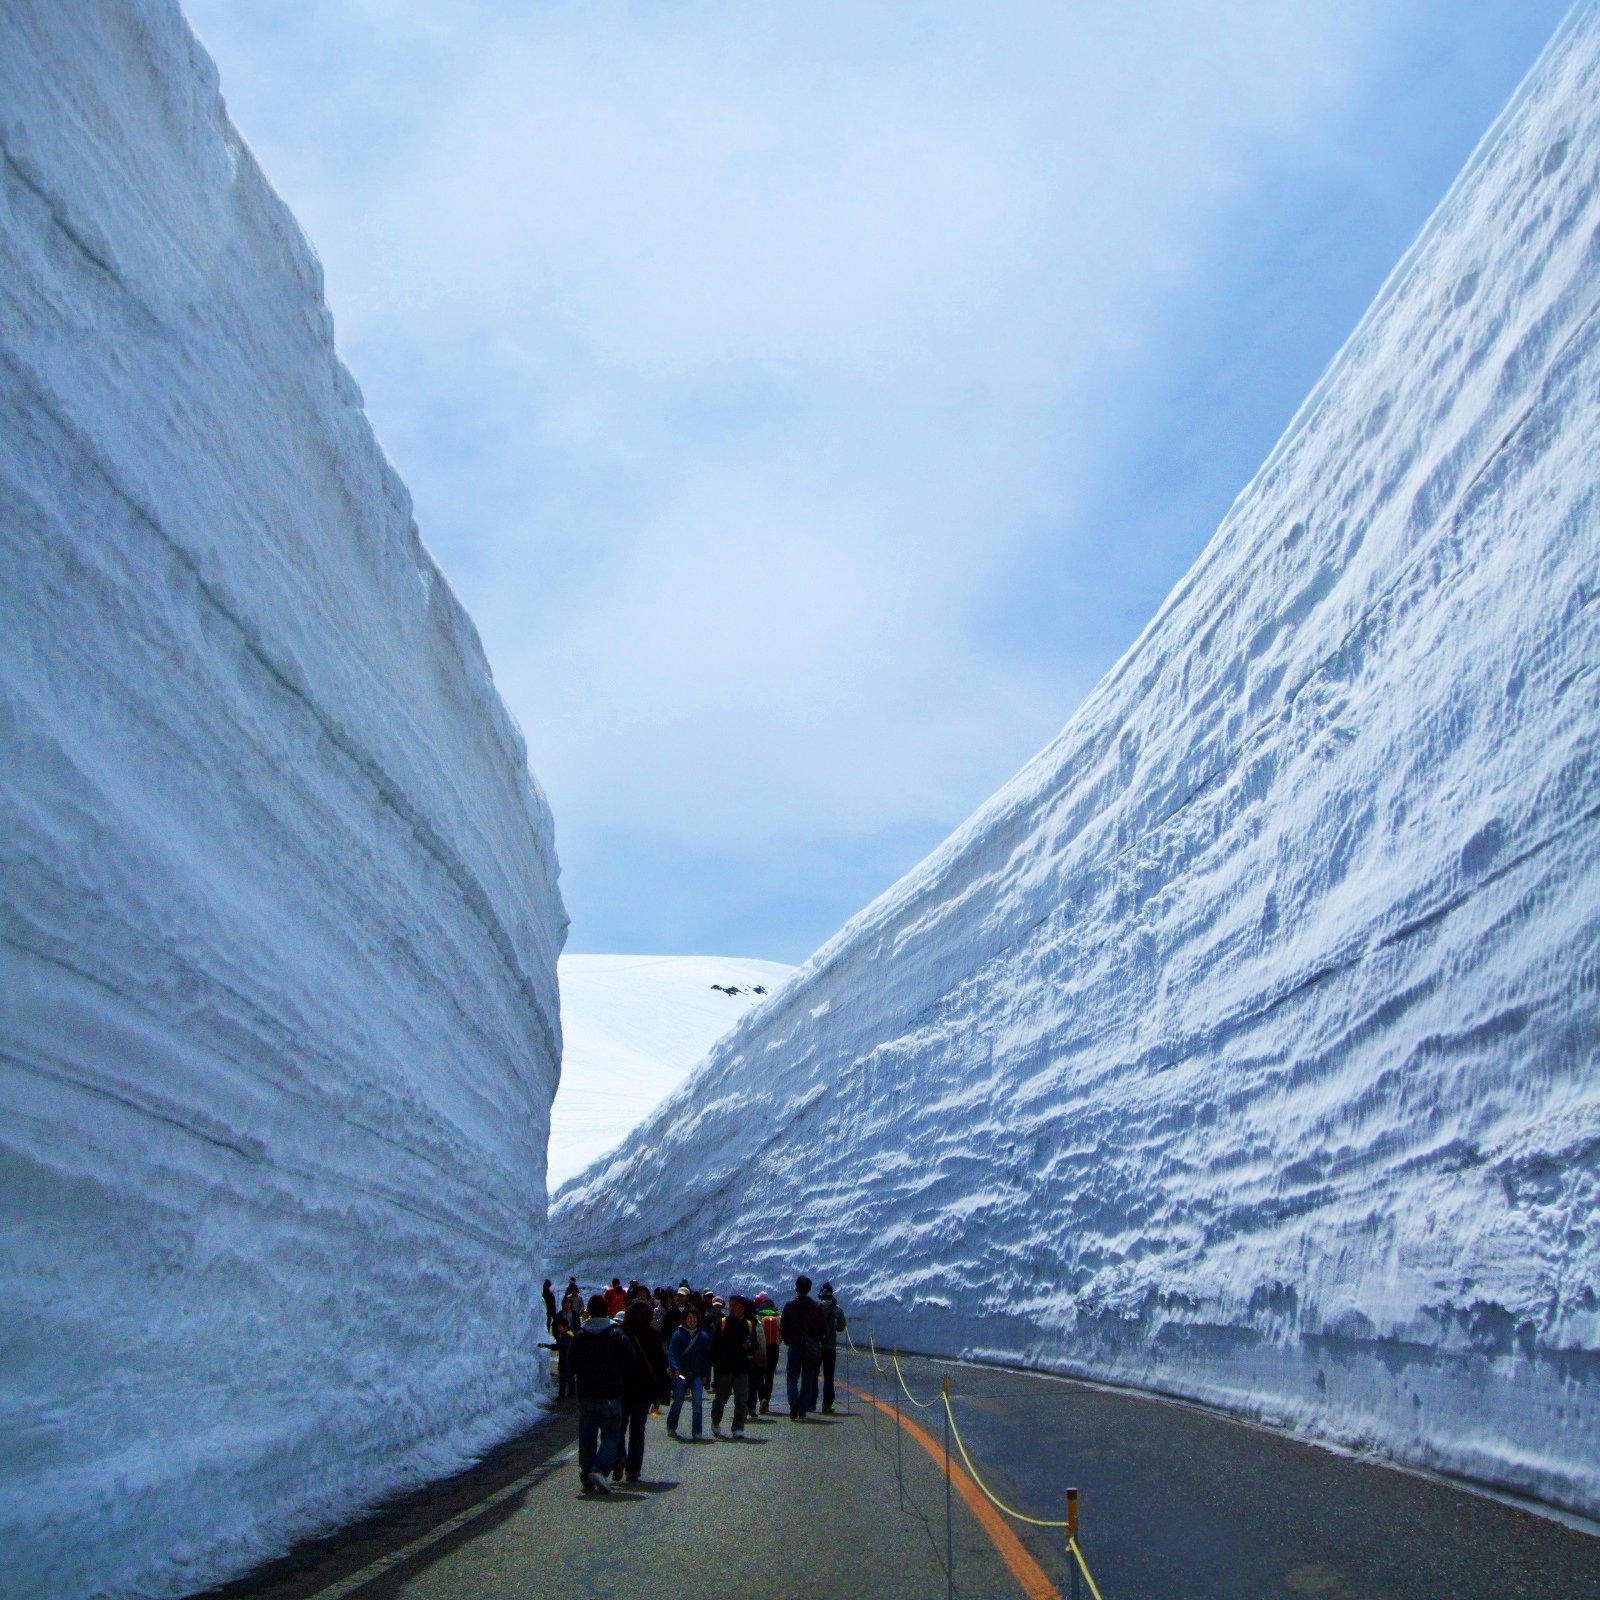 Самый большой сугроб. Татэяма Куробэ. Снежный коридор Татэяма Куробэ в Японии. Альпийский маршрут Татэяма Куробэ. Tateyama Kurobe Alpine.